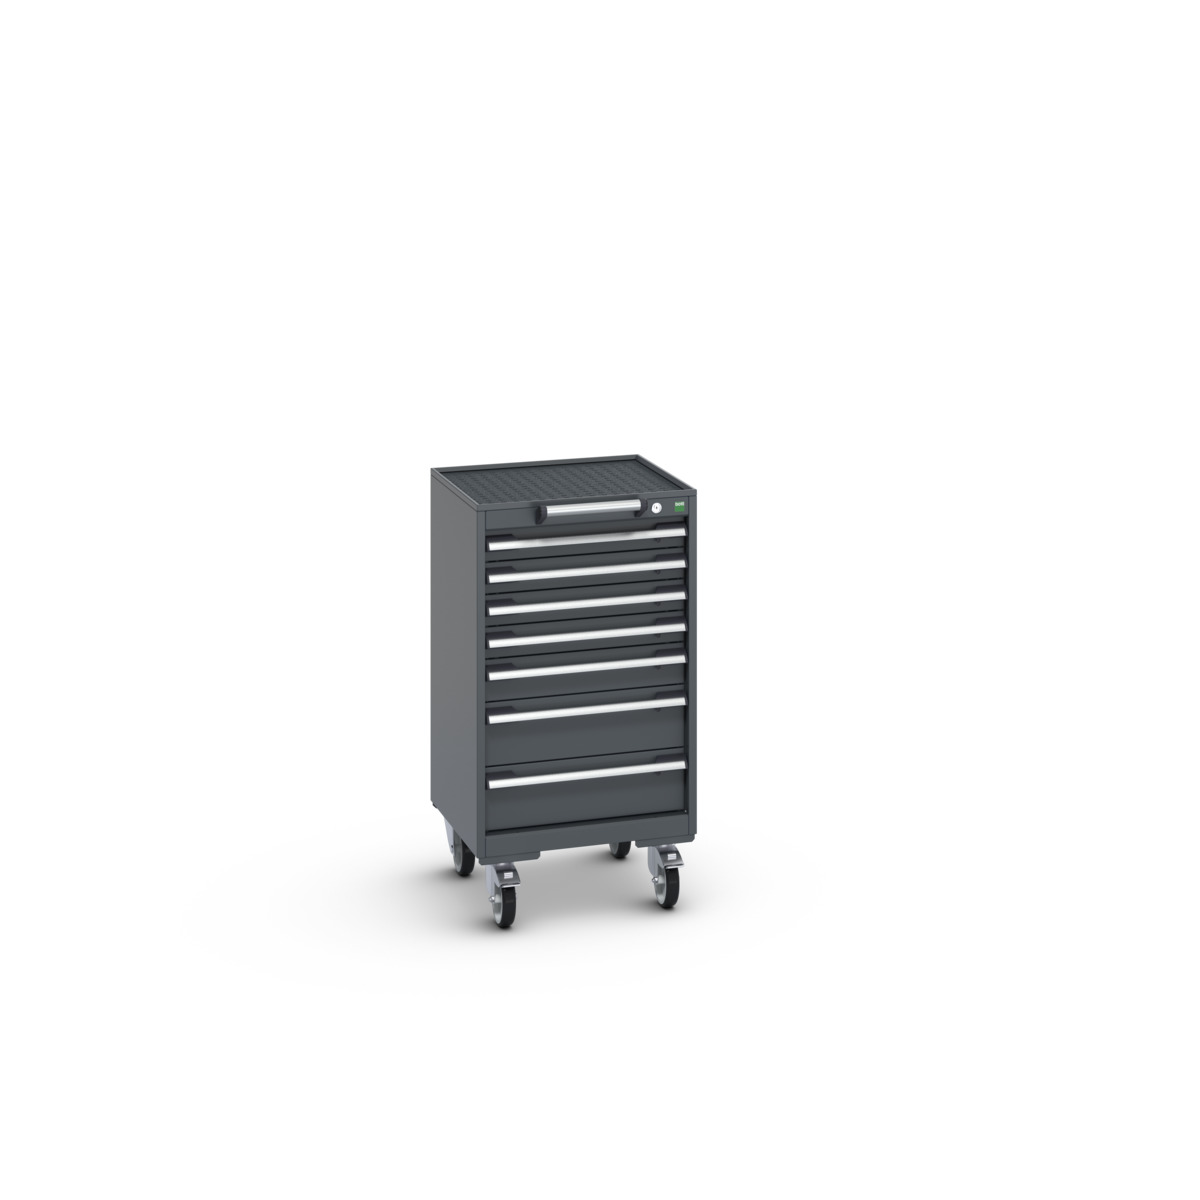 40402021.77V - cubio mobile cabinet